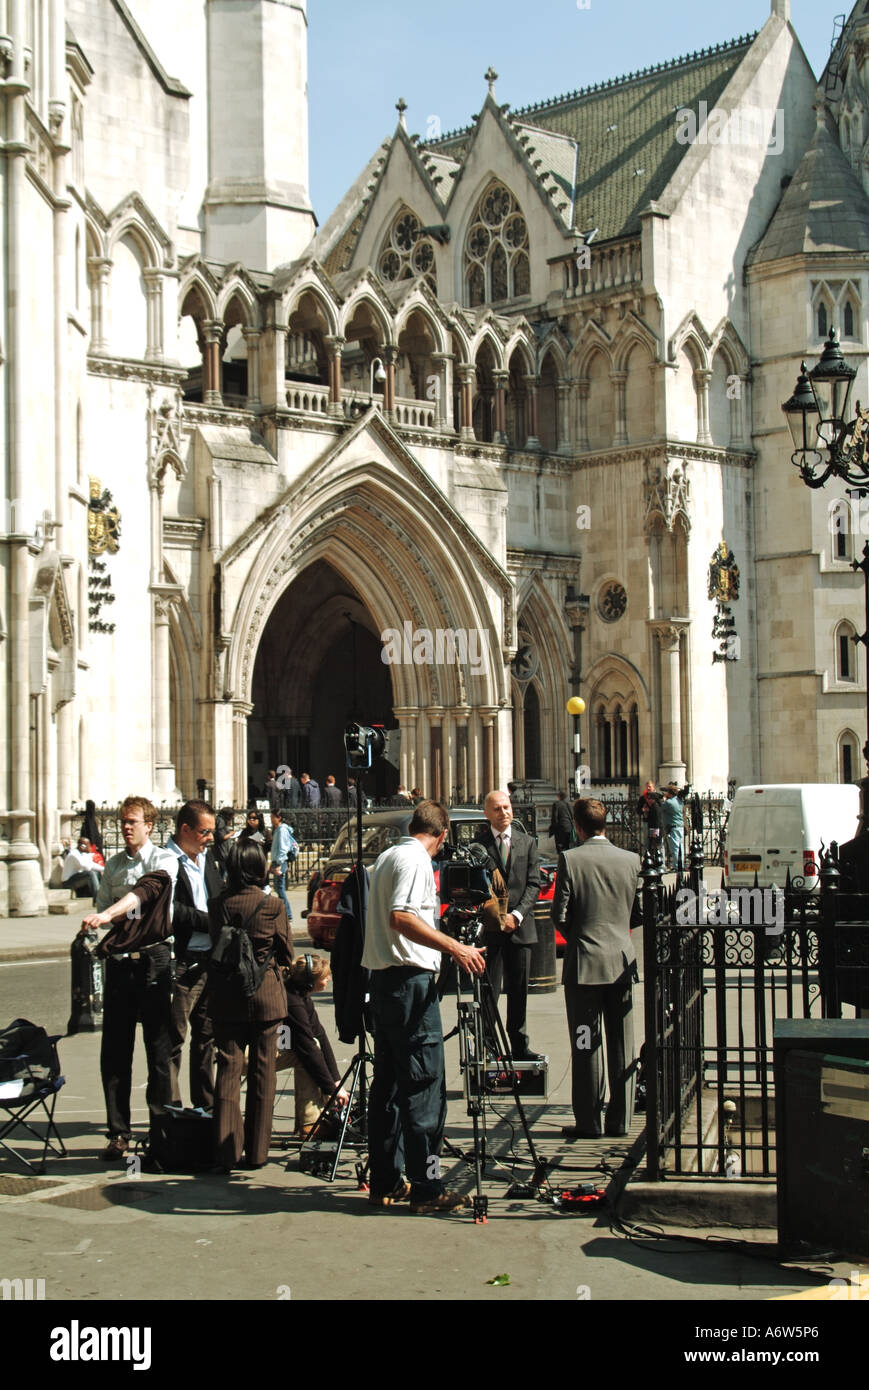 Nachrichtenreporter und Journalisten mit Kamerateam bei der Arbeit, Interviews und Berichterstattung außerhalb der Royal Courts of Justice Strand London England Großbritannien Stockfoto